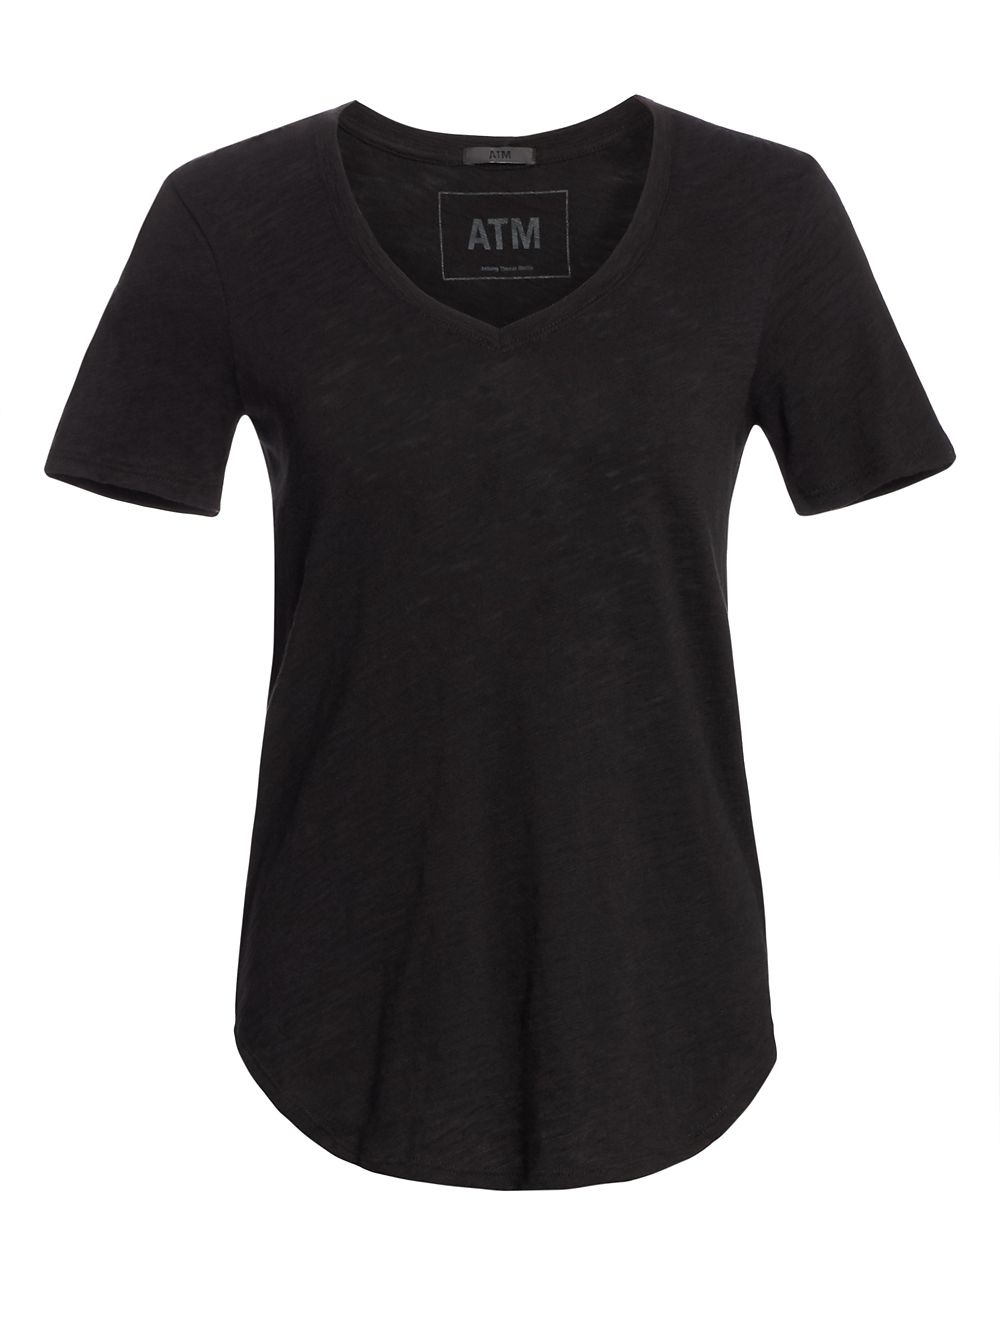 Хлопковая футболка с V-образным вырезом ATM Anthony Thomas Melillo, черный футболка с v образным вырезом 100% эксклюзив atm anthony thomas melillo